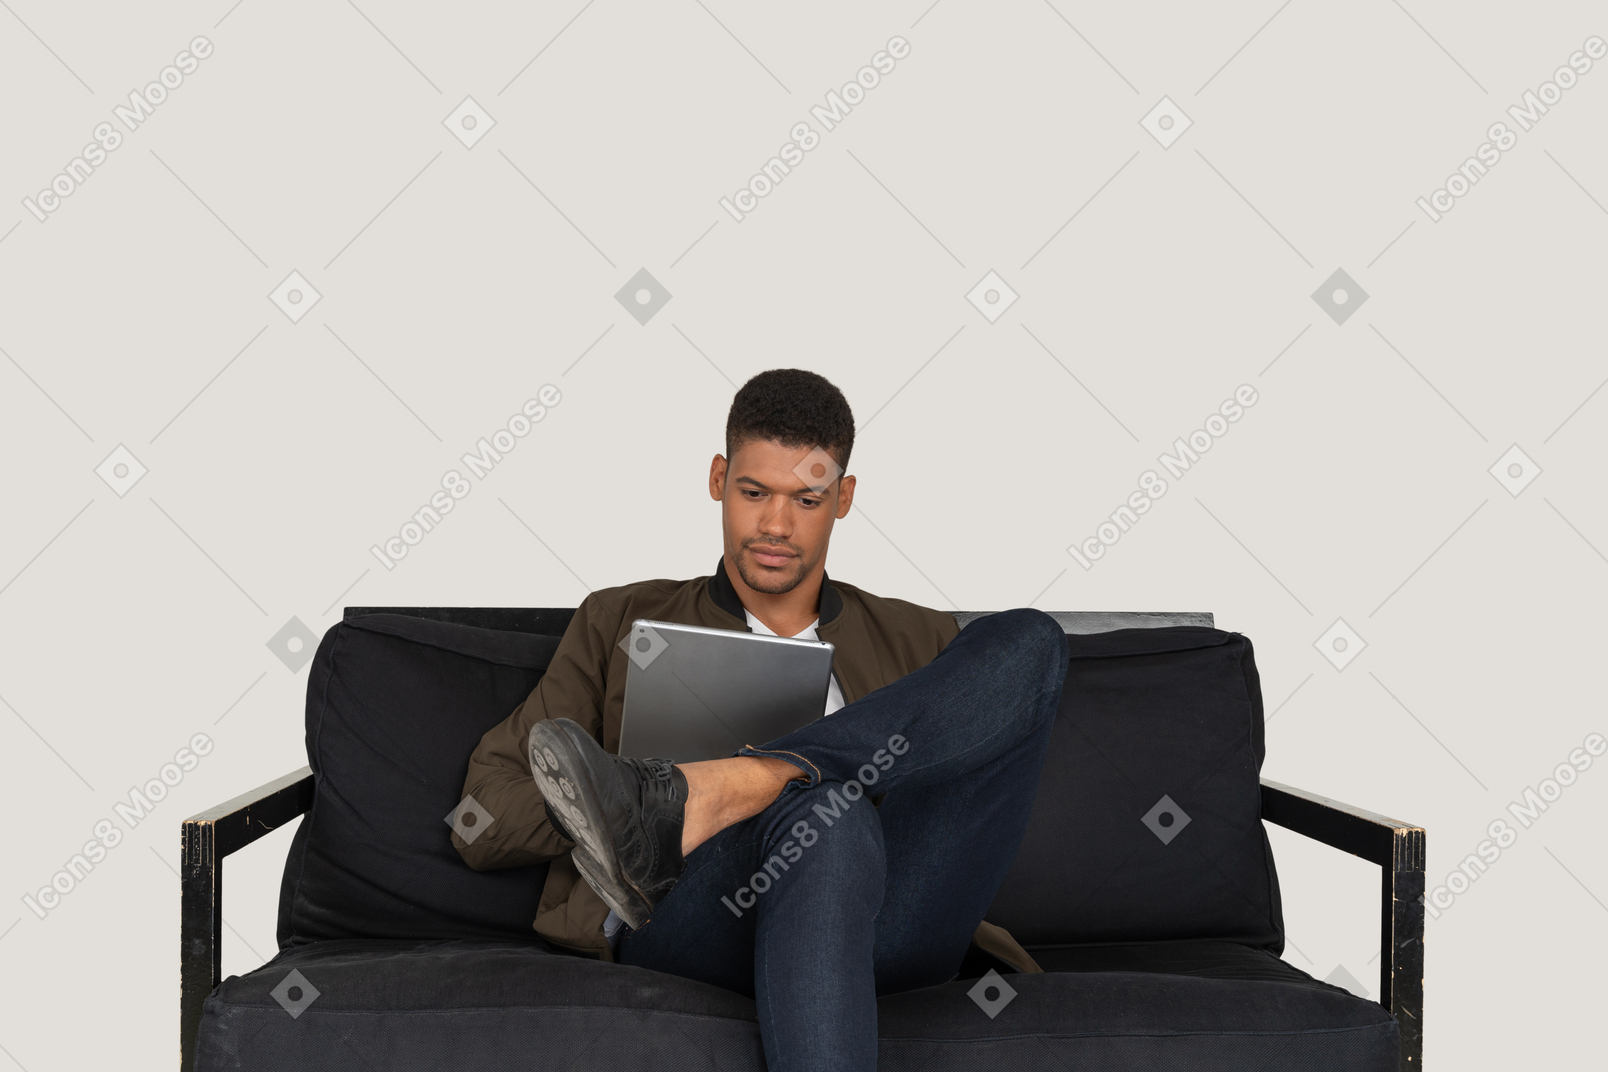 Vista frontal de um jovem sentado em um sofá segurando um tablet